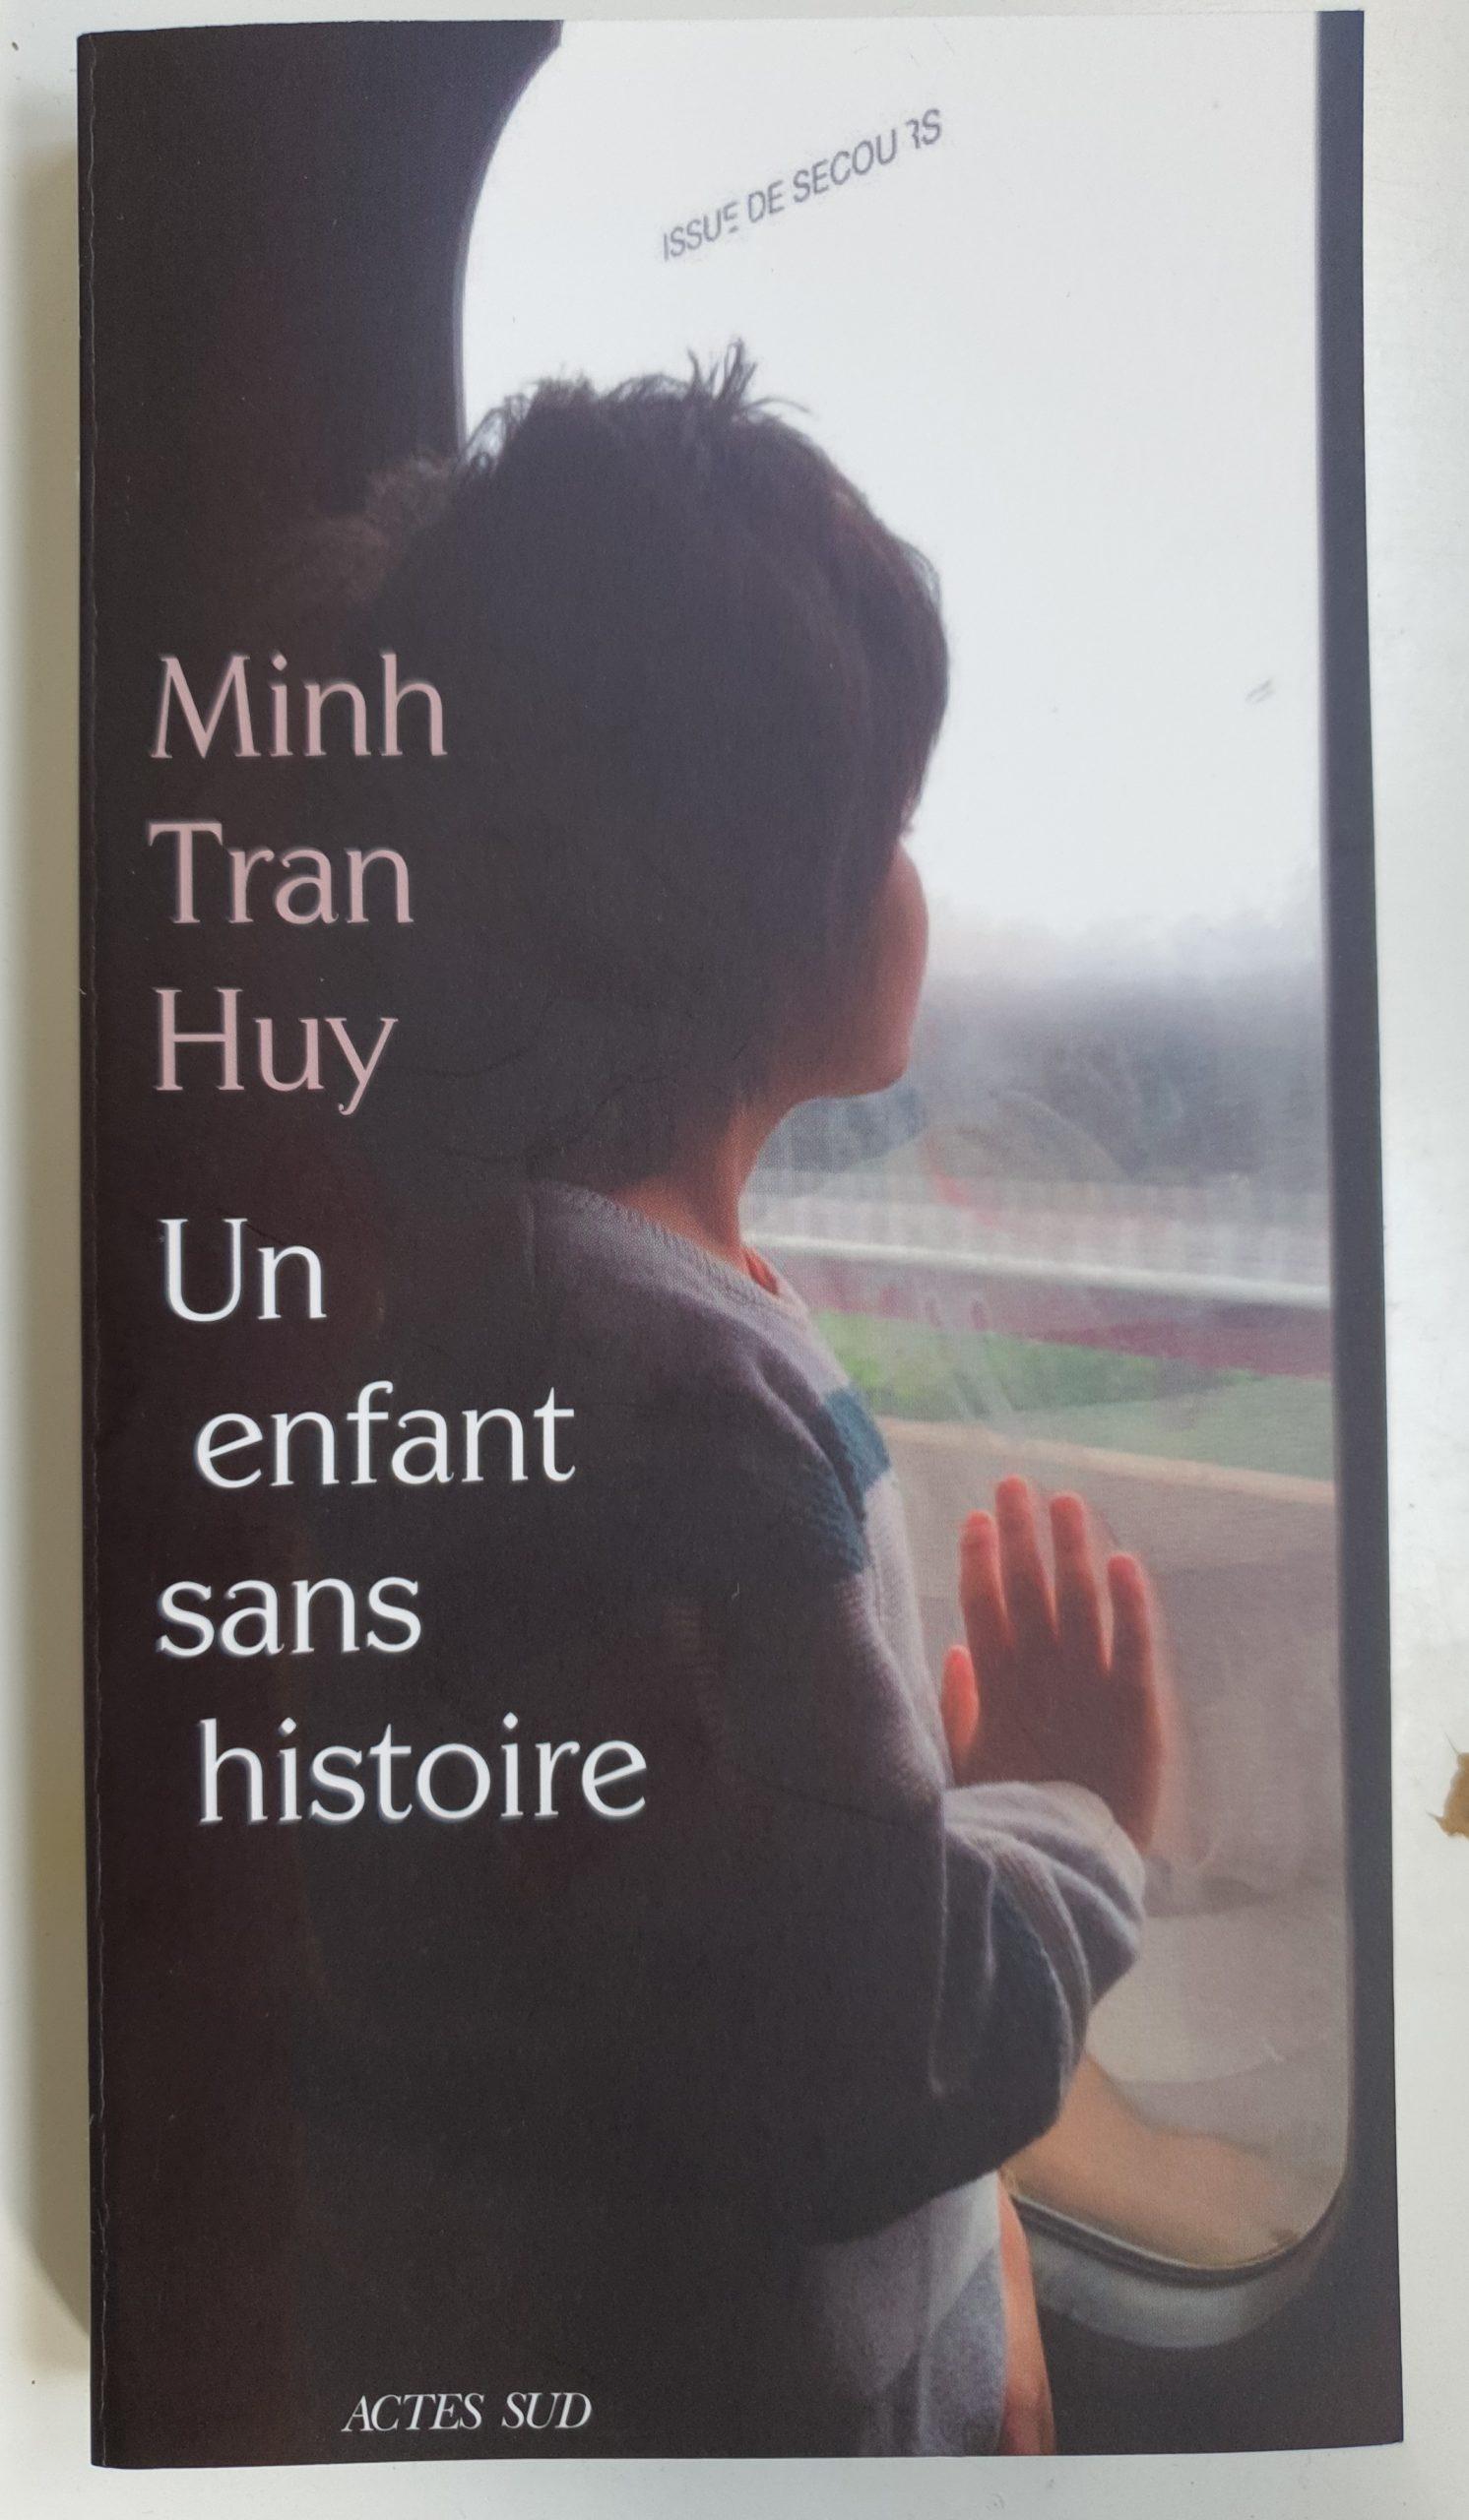 Première de couverture du livre "Un enfant sans histoire"